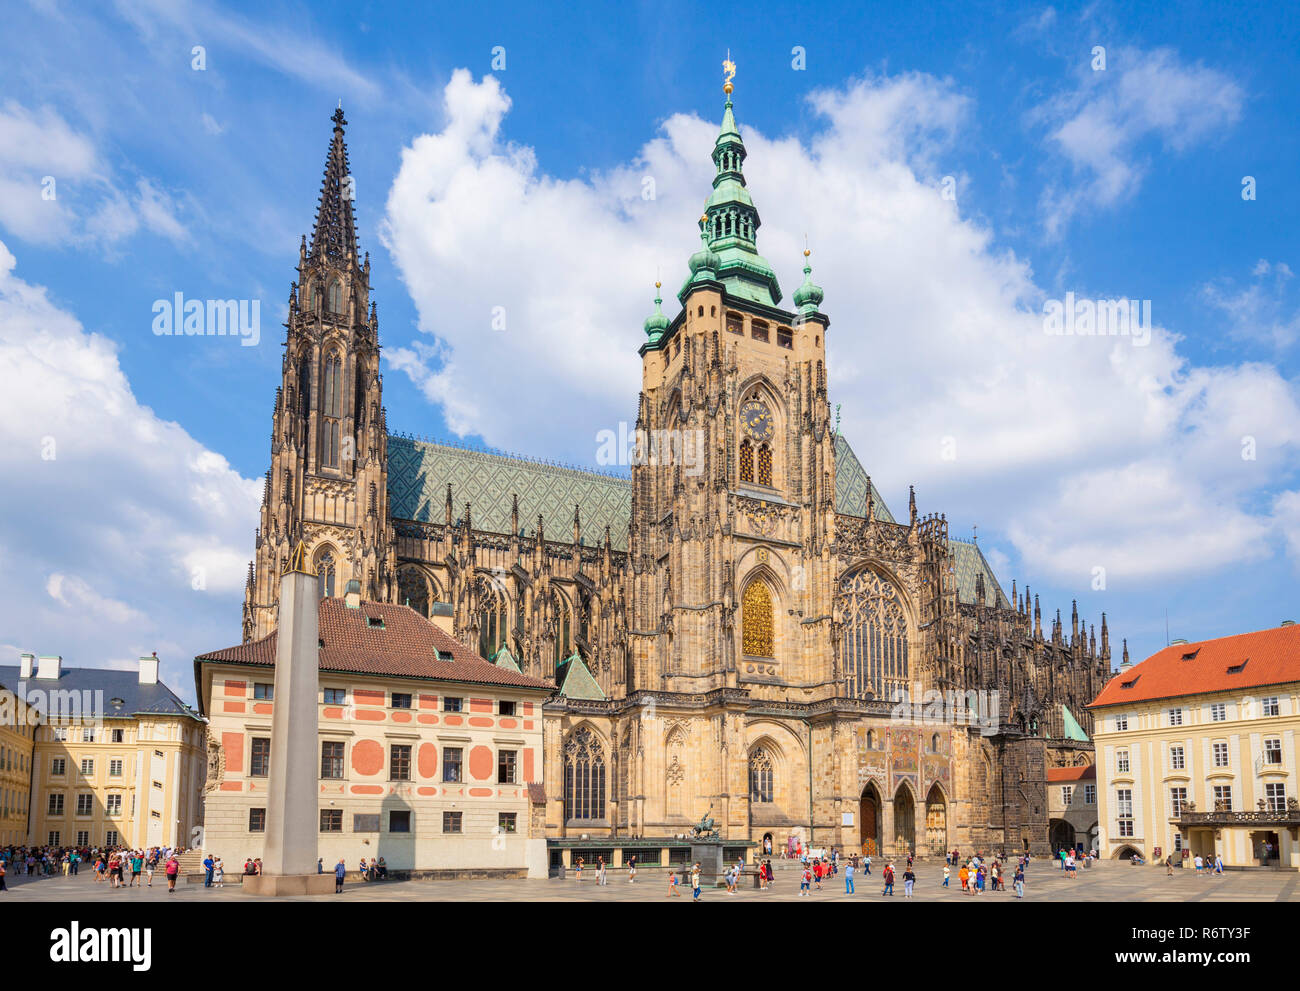 Cathédrale Saint-Guy de Prague Grand tour sud de la cathédrale Katedrála Sv. Víta Troisième cour du château de Prague Prague République Tchèque Europe Banque D'Images